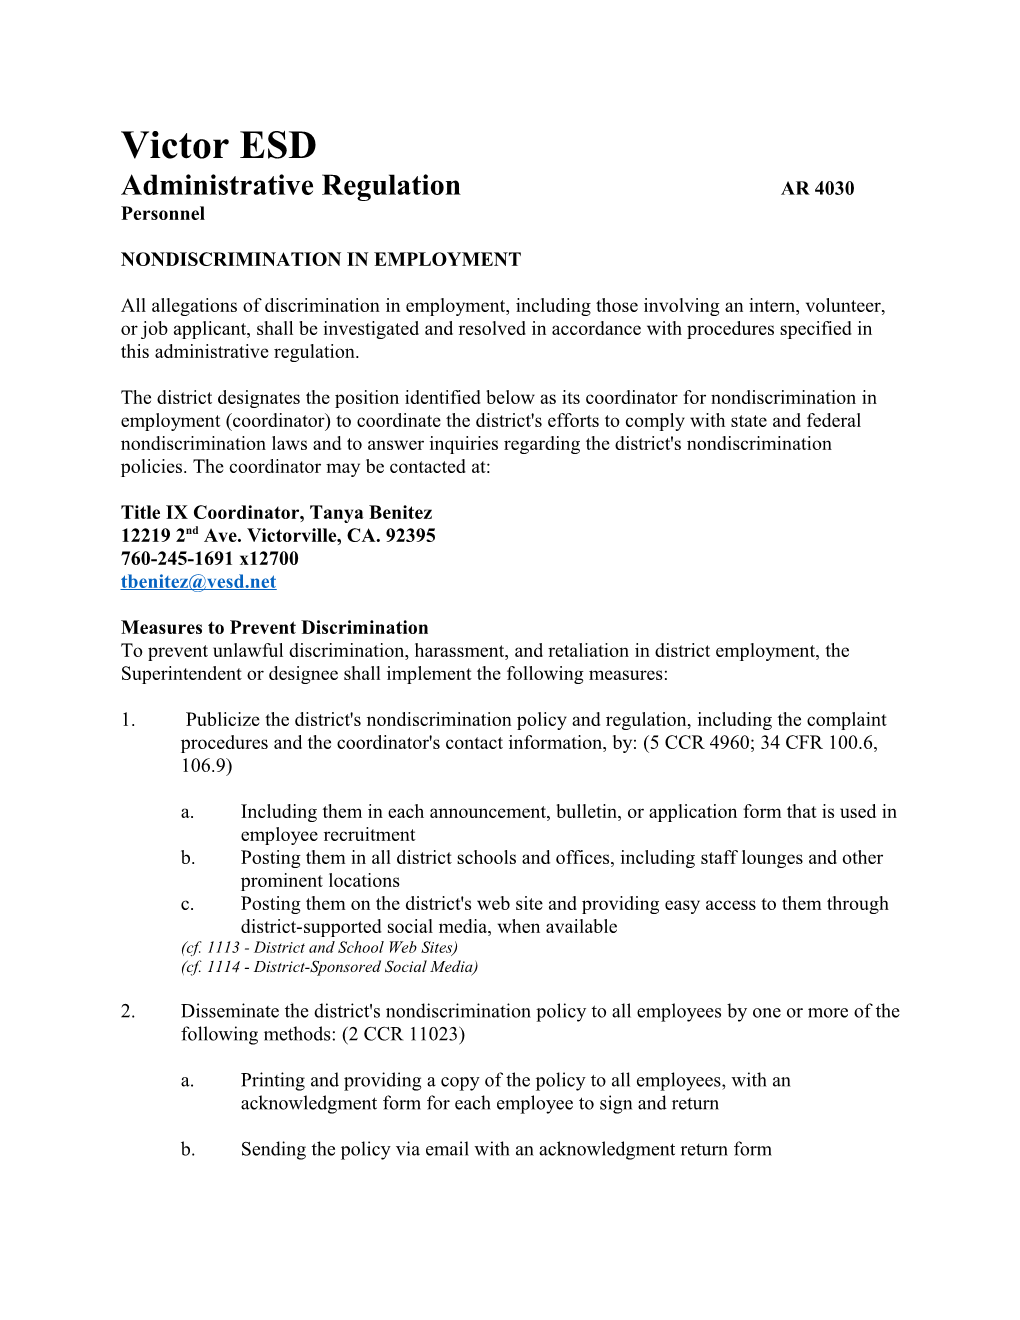 Administrative Regulation AR 4030